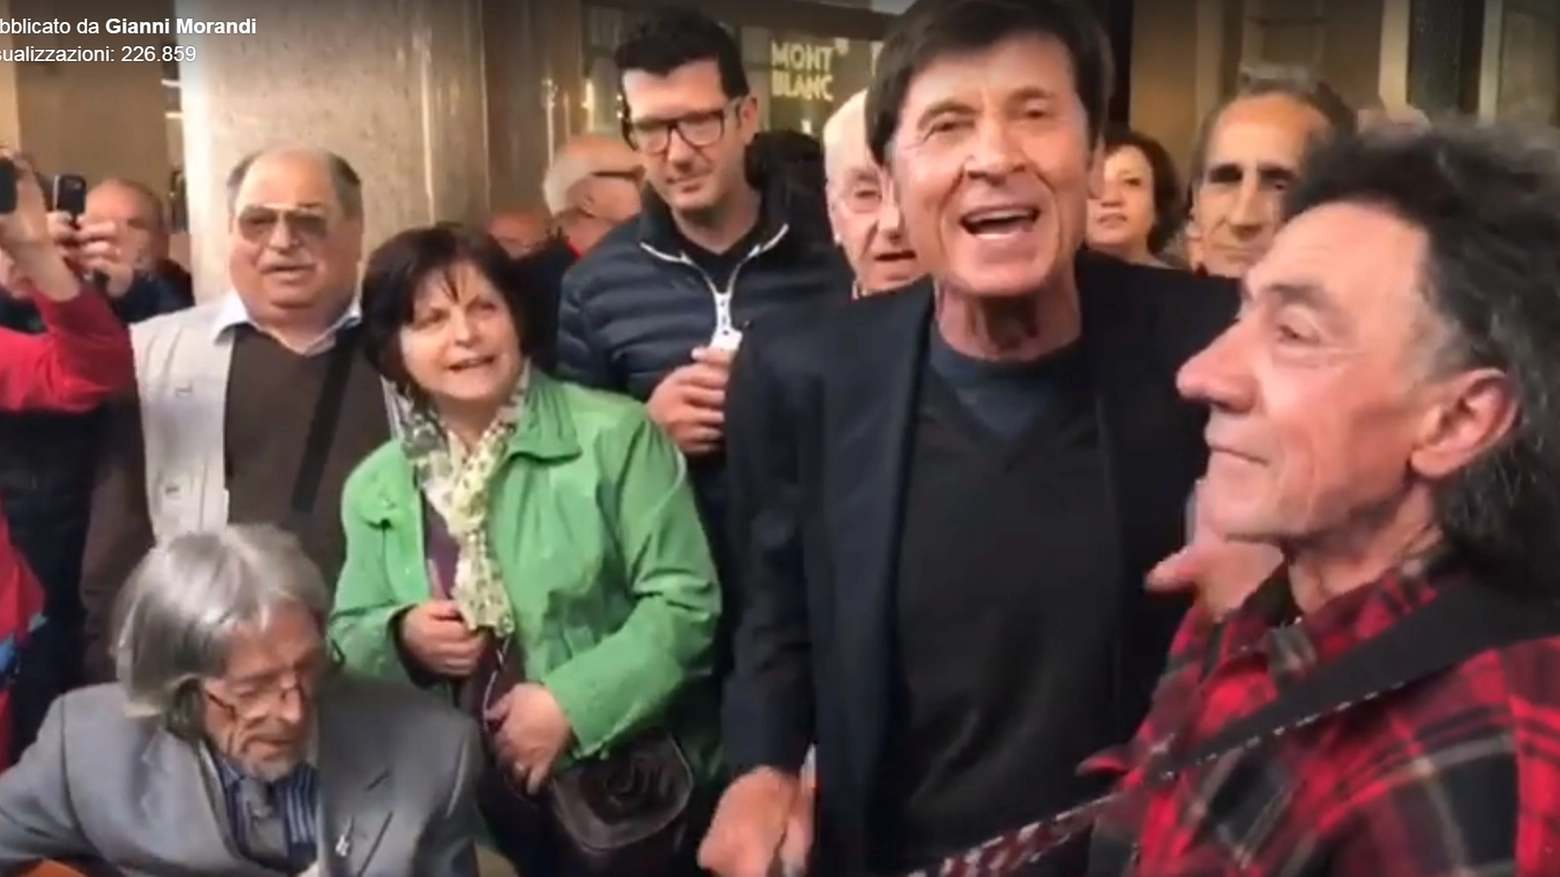 Gianni Morandi canta con gli artisti di strada a Torino